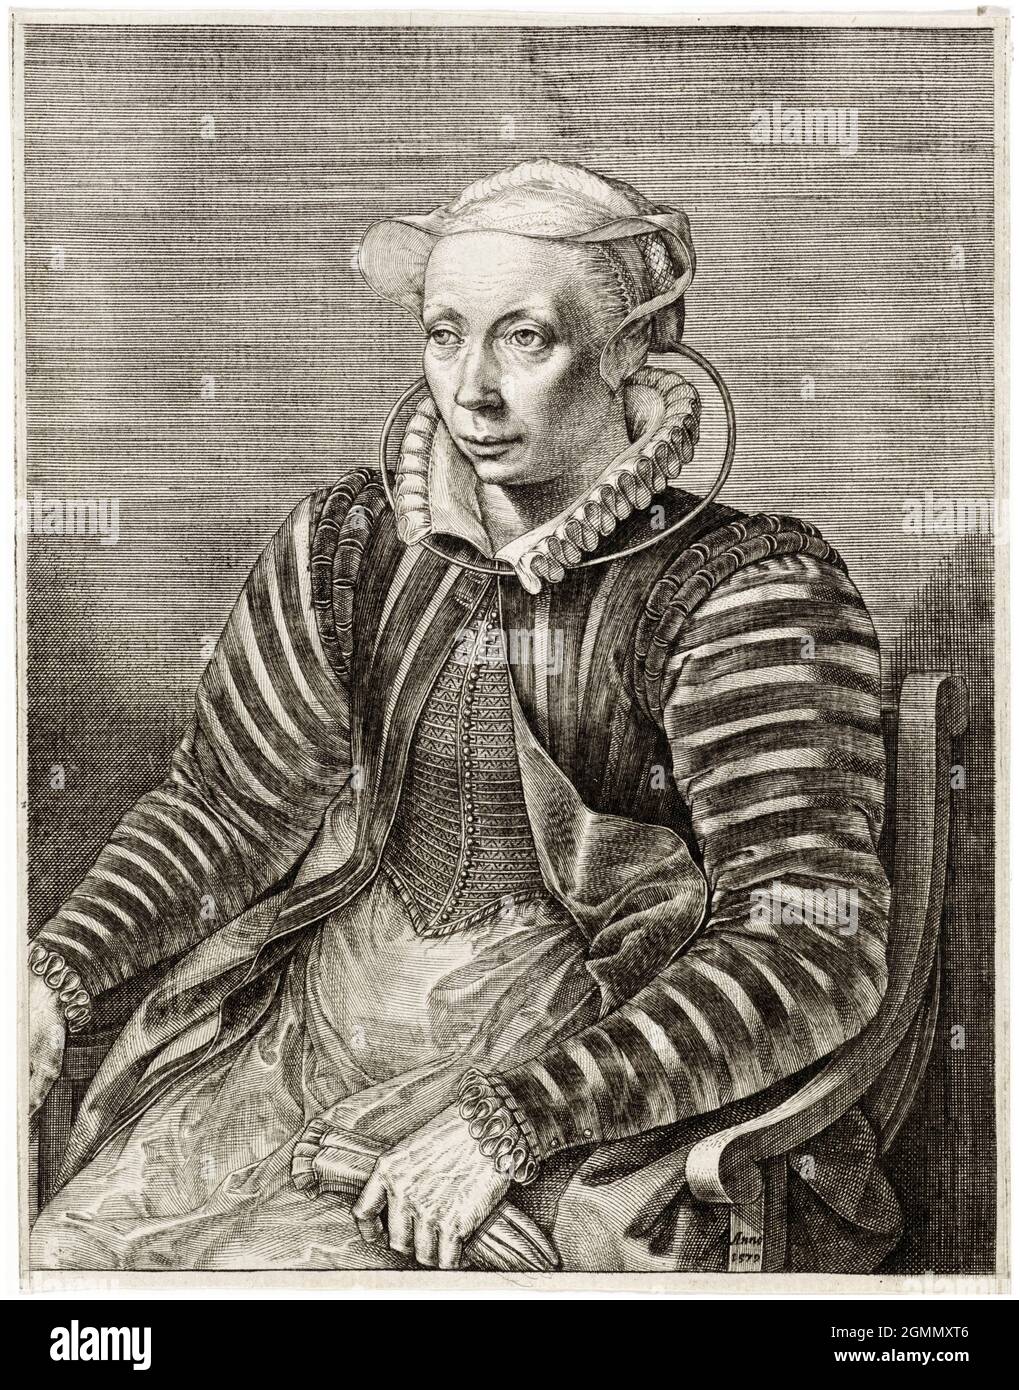 Volcxken Diericx (um 1525-1600), flämischer Druckmacher und Verleger, Ehefrau von Hieronymus Cock, Porträtstich zugeschrieben Johannes Wierix, 1579 Stockfoto